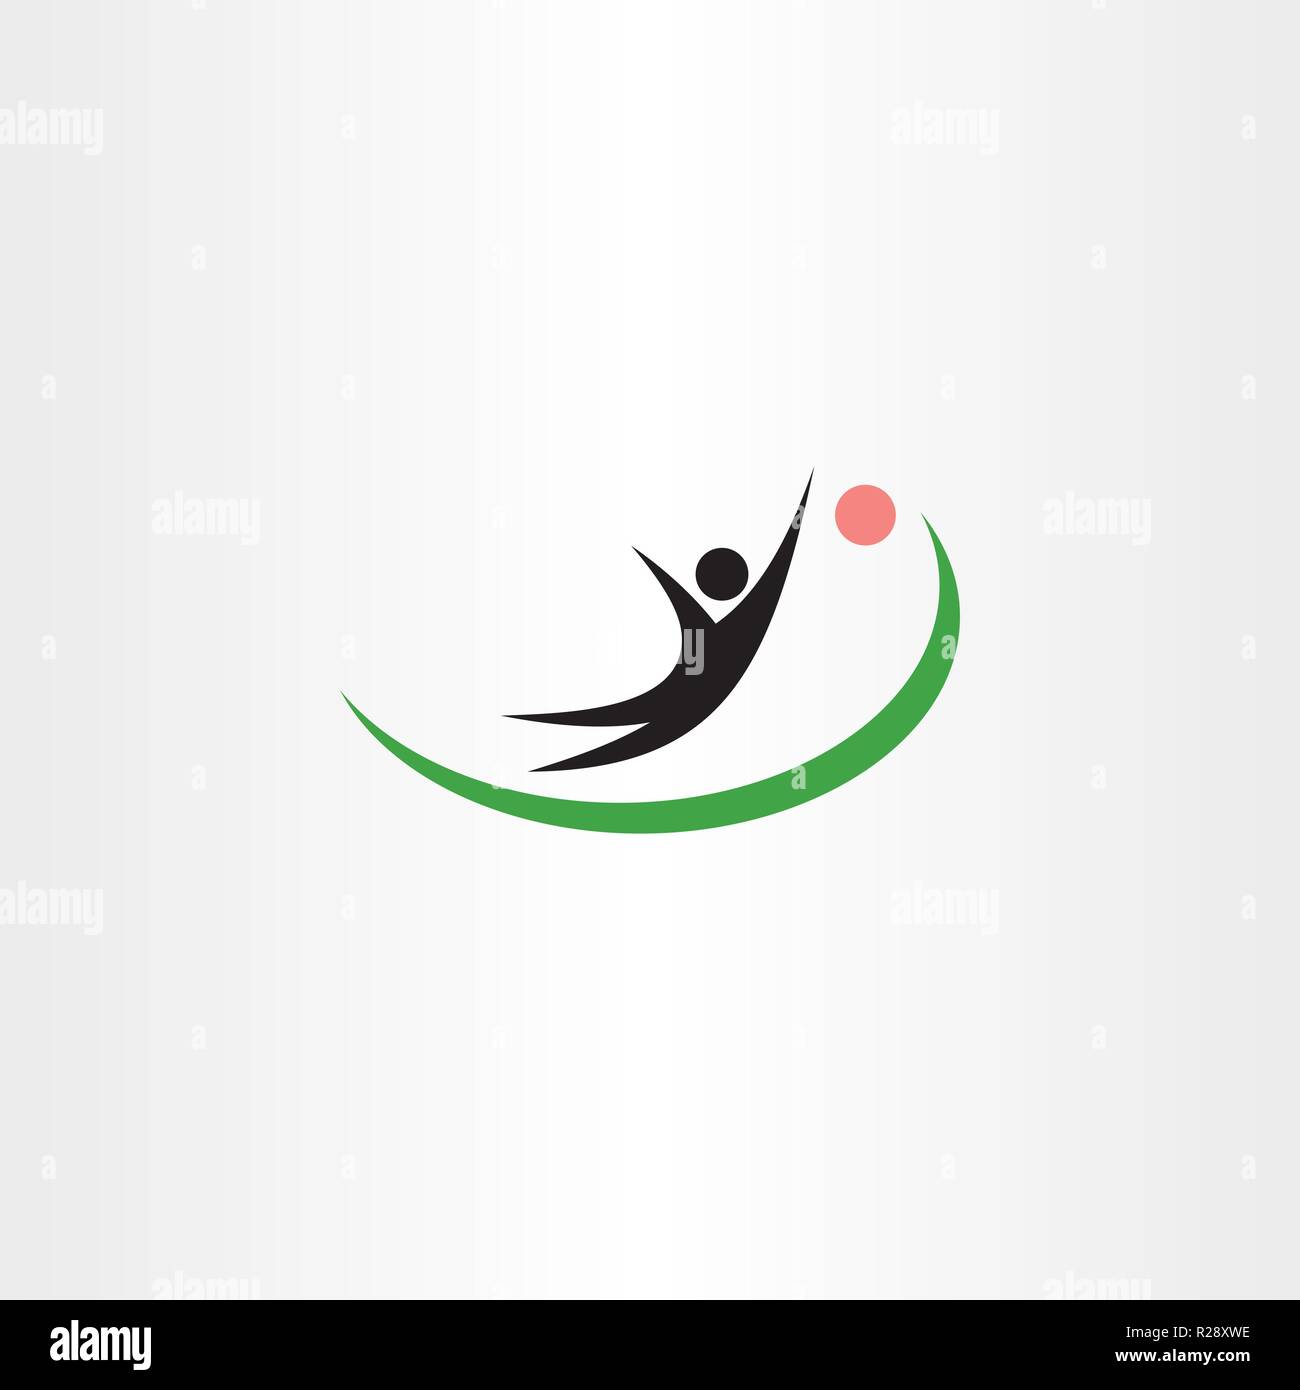 goalkeeper symbol logo vector icon Stock Vector